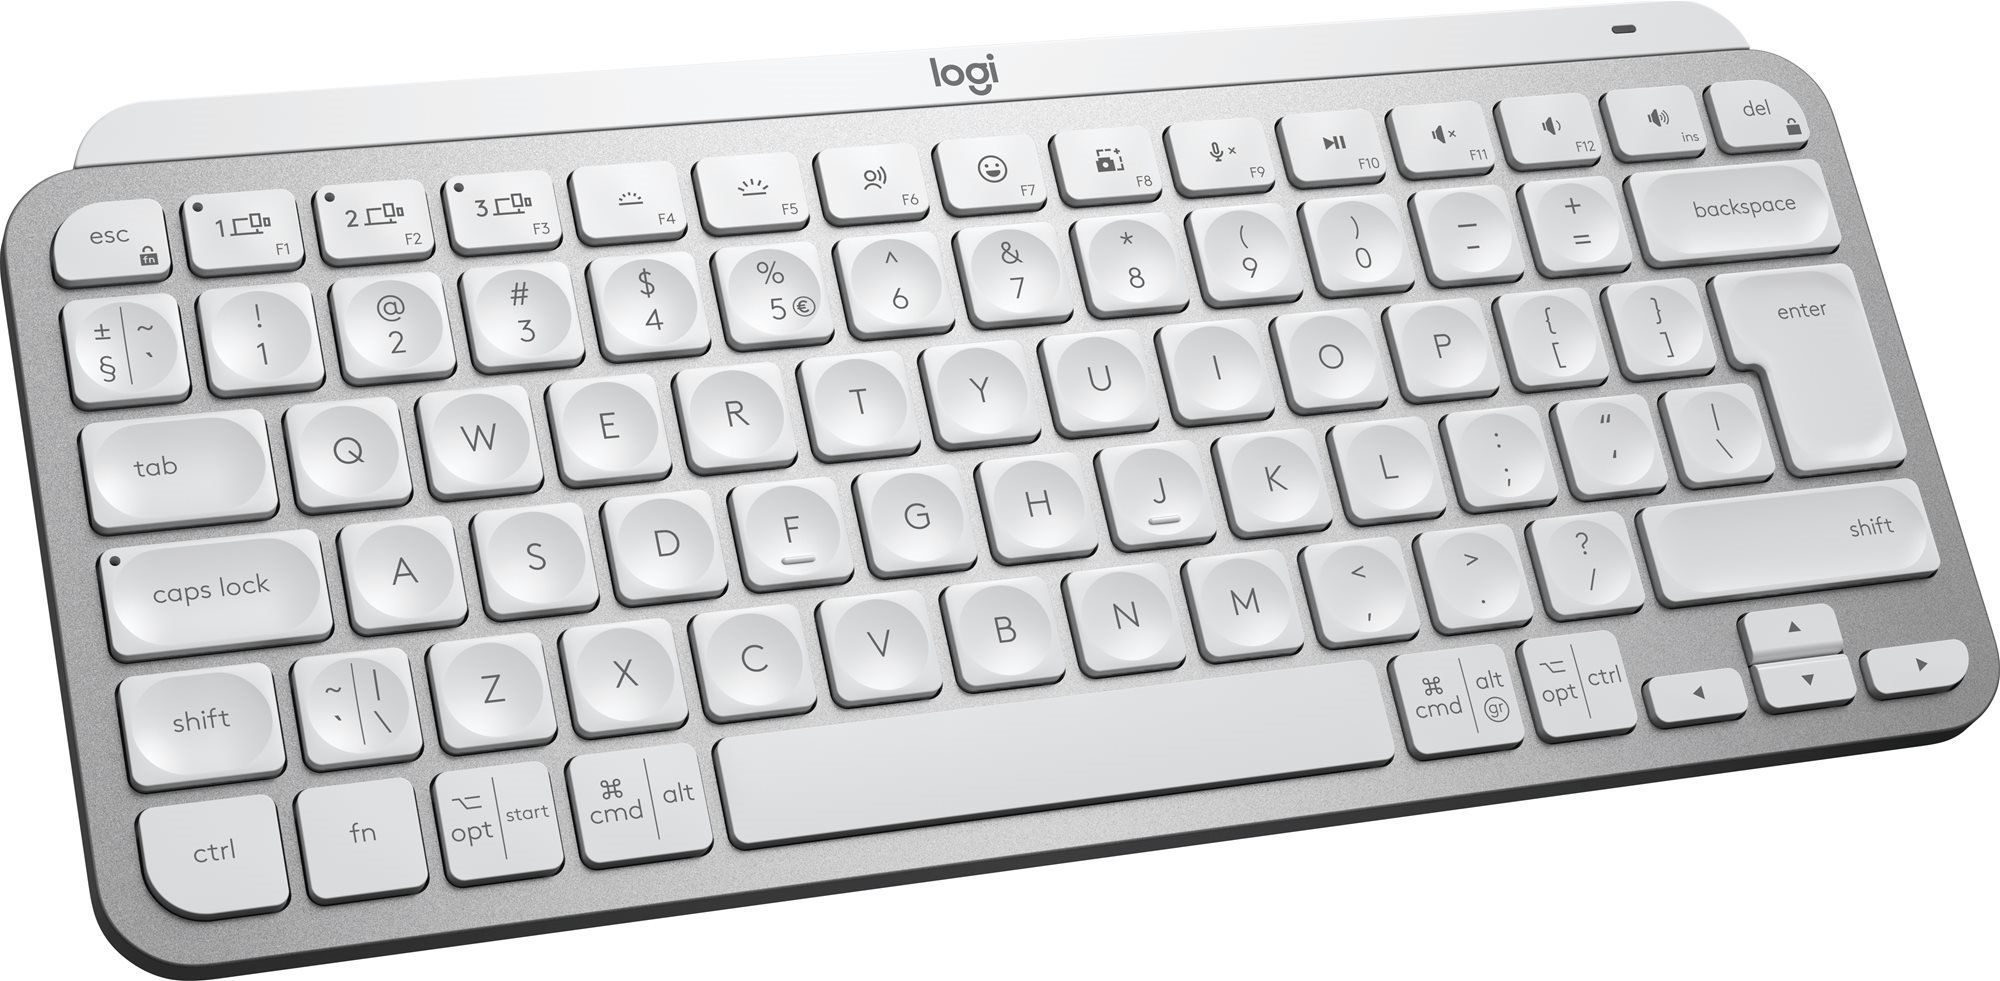 Logitech MX Keys Mini For Mac Minimalist Wireless Illuminated Keyboard, Pale Grey - US INTL